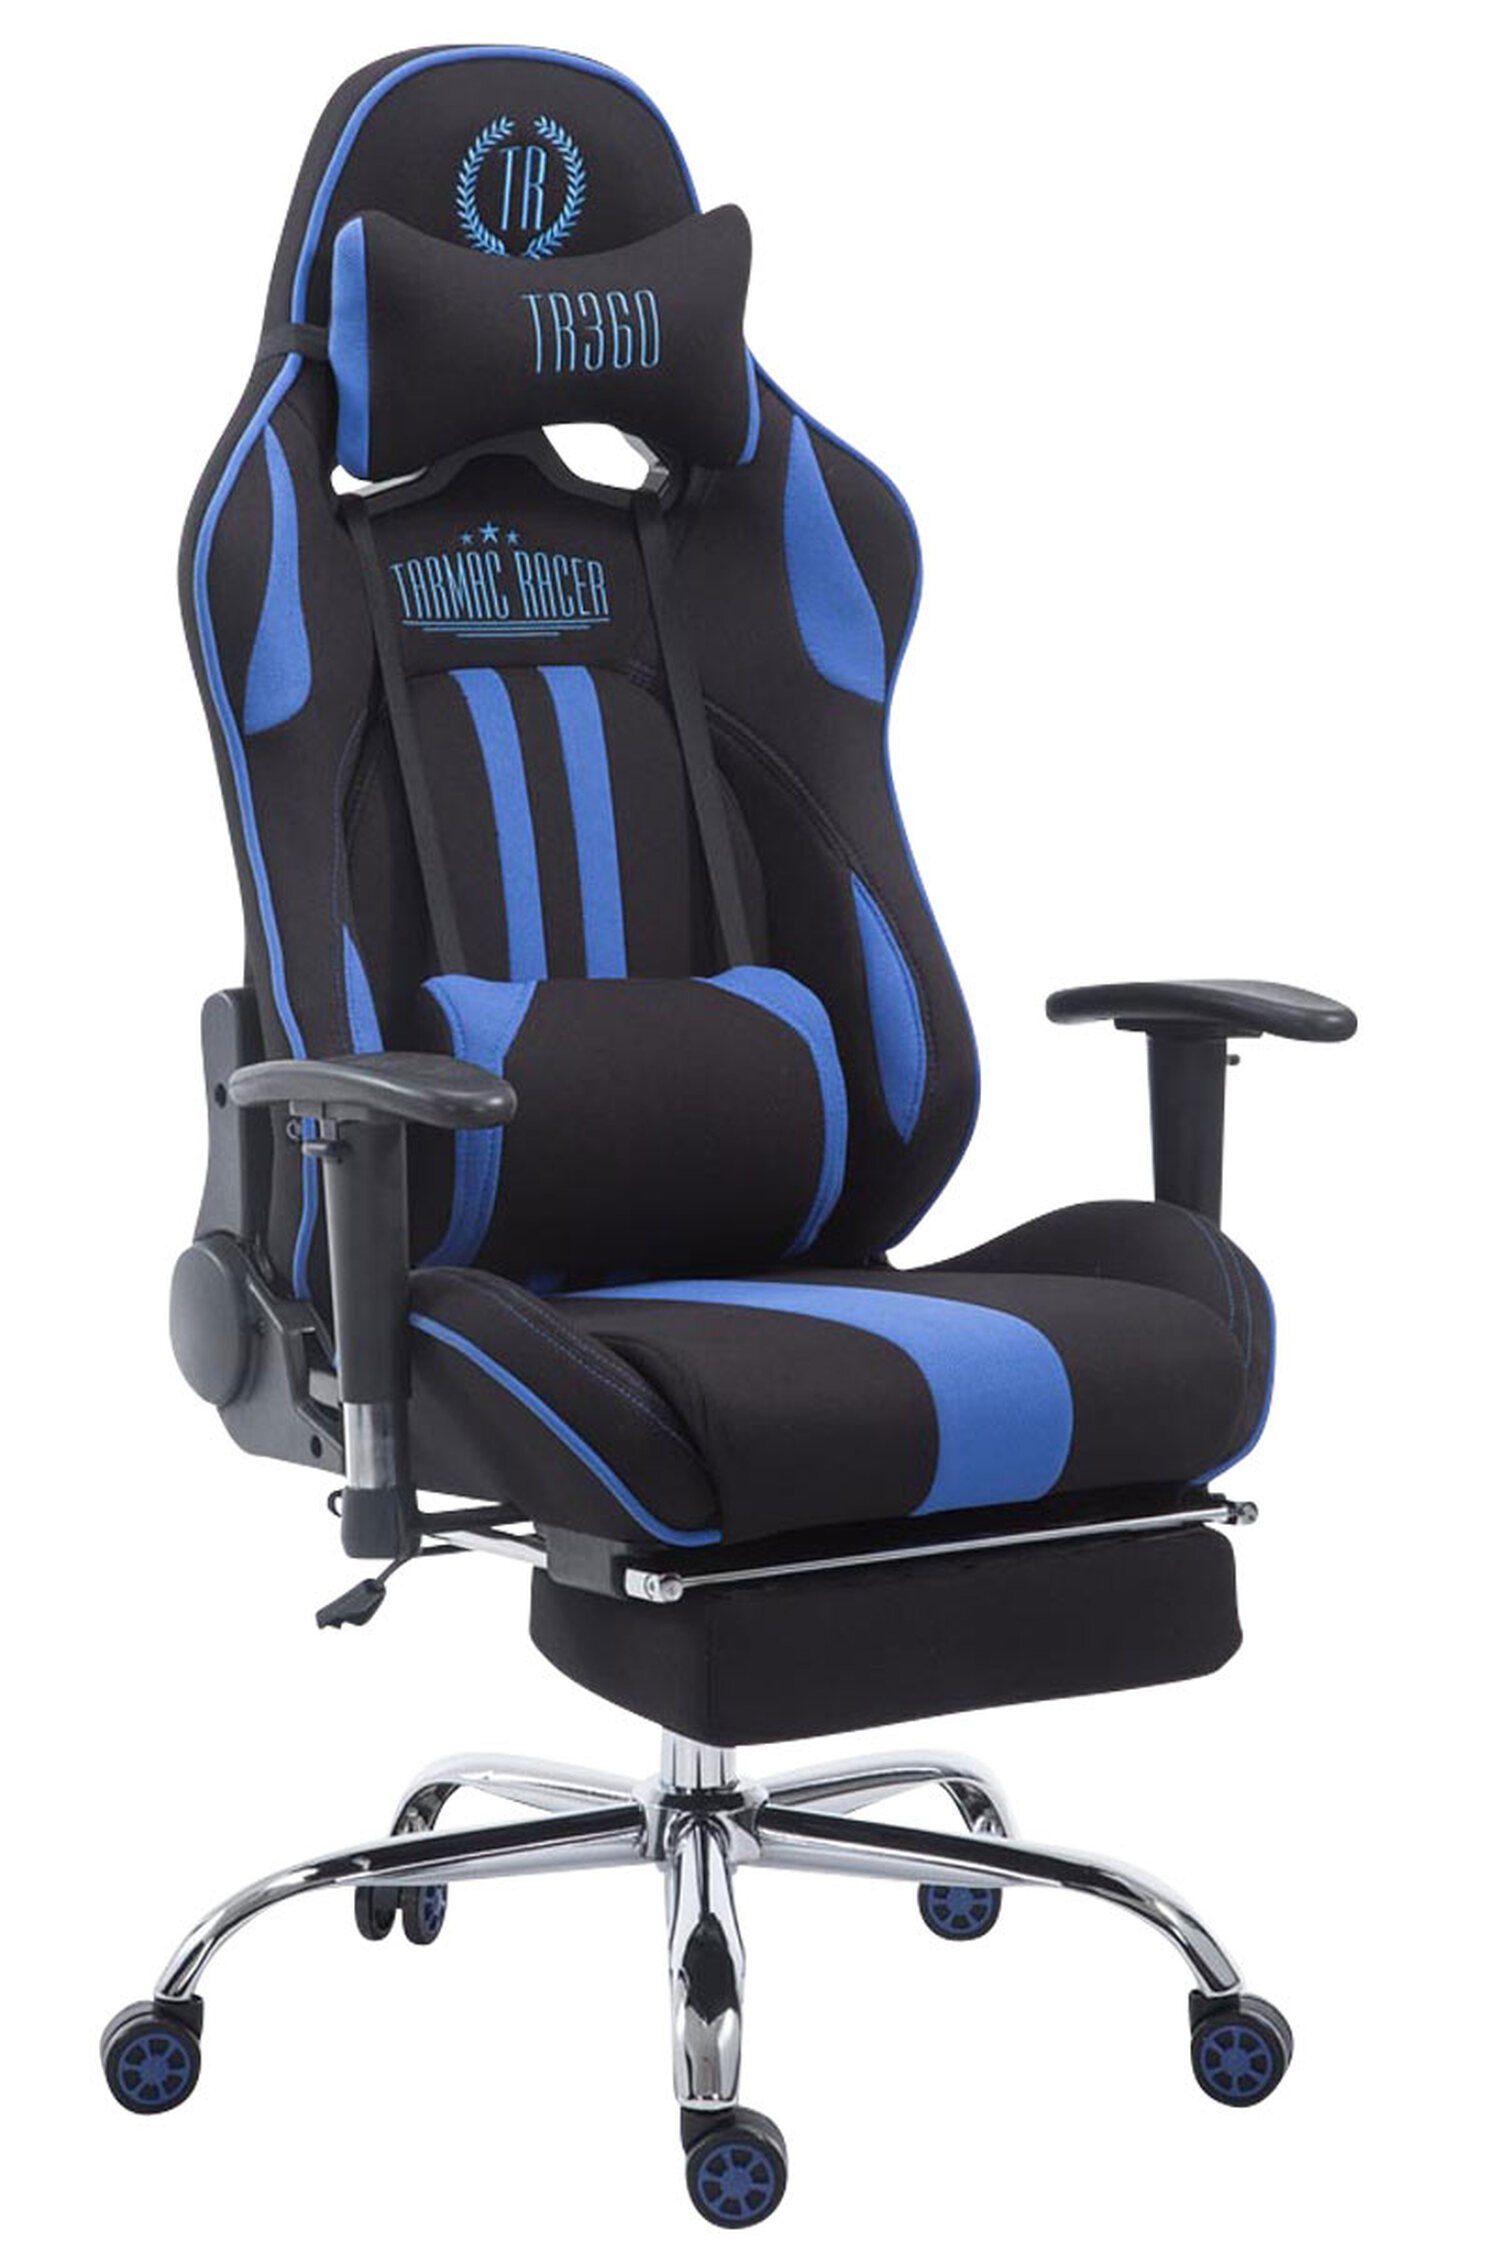 TPFLiving Gaming-Stuhl Limitless mit bequemer Rückenlehne - höhenverstellbar und 360° drehbar (Schreibtischstuhl, Drehstuhl, Gamingstuhl, Racingstuhl, Chefsessel), Gestell: Metall chrom - Sitzfläche: Stoff schwarz/blau